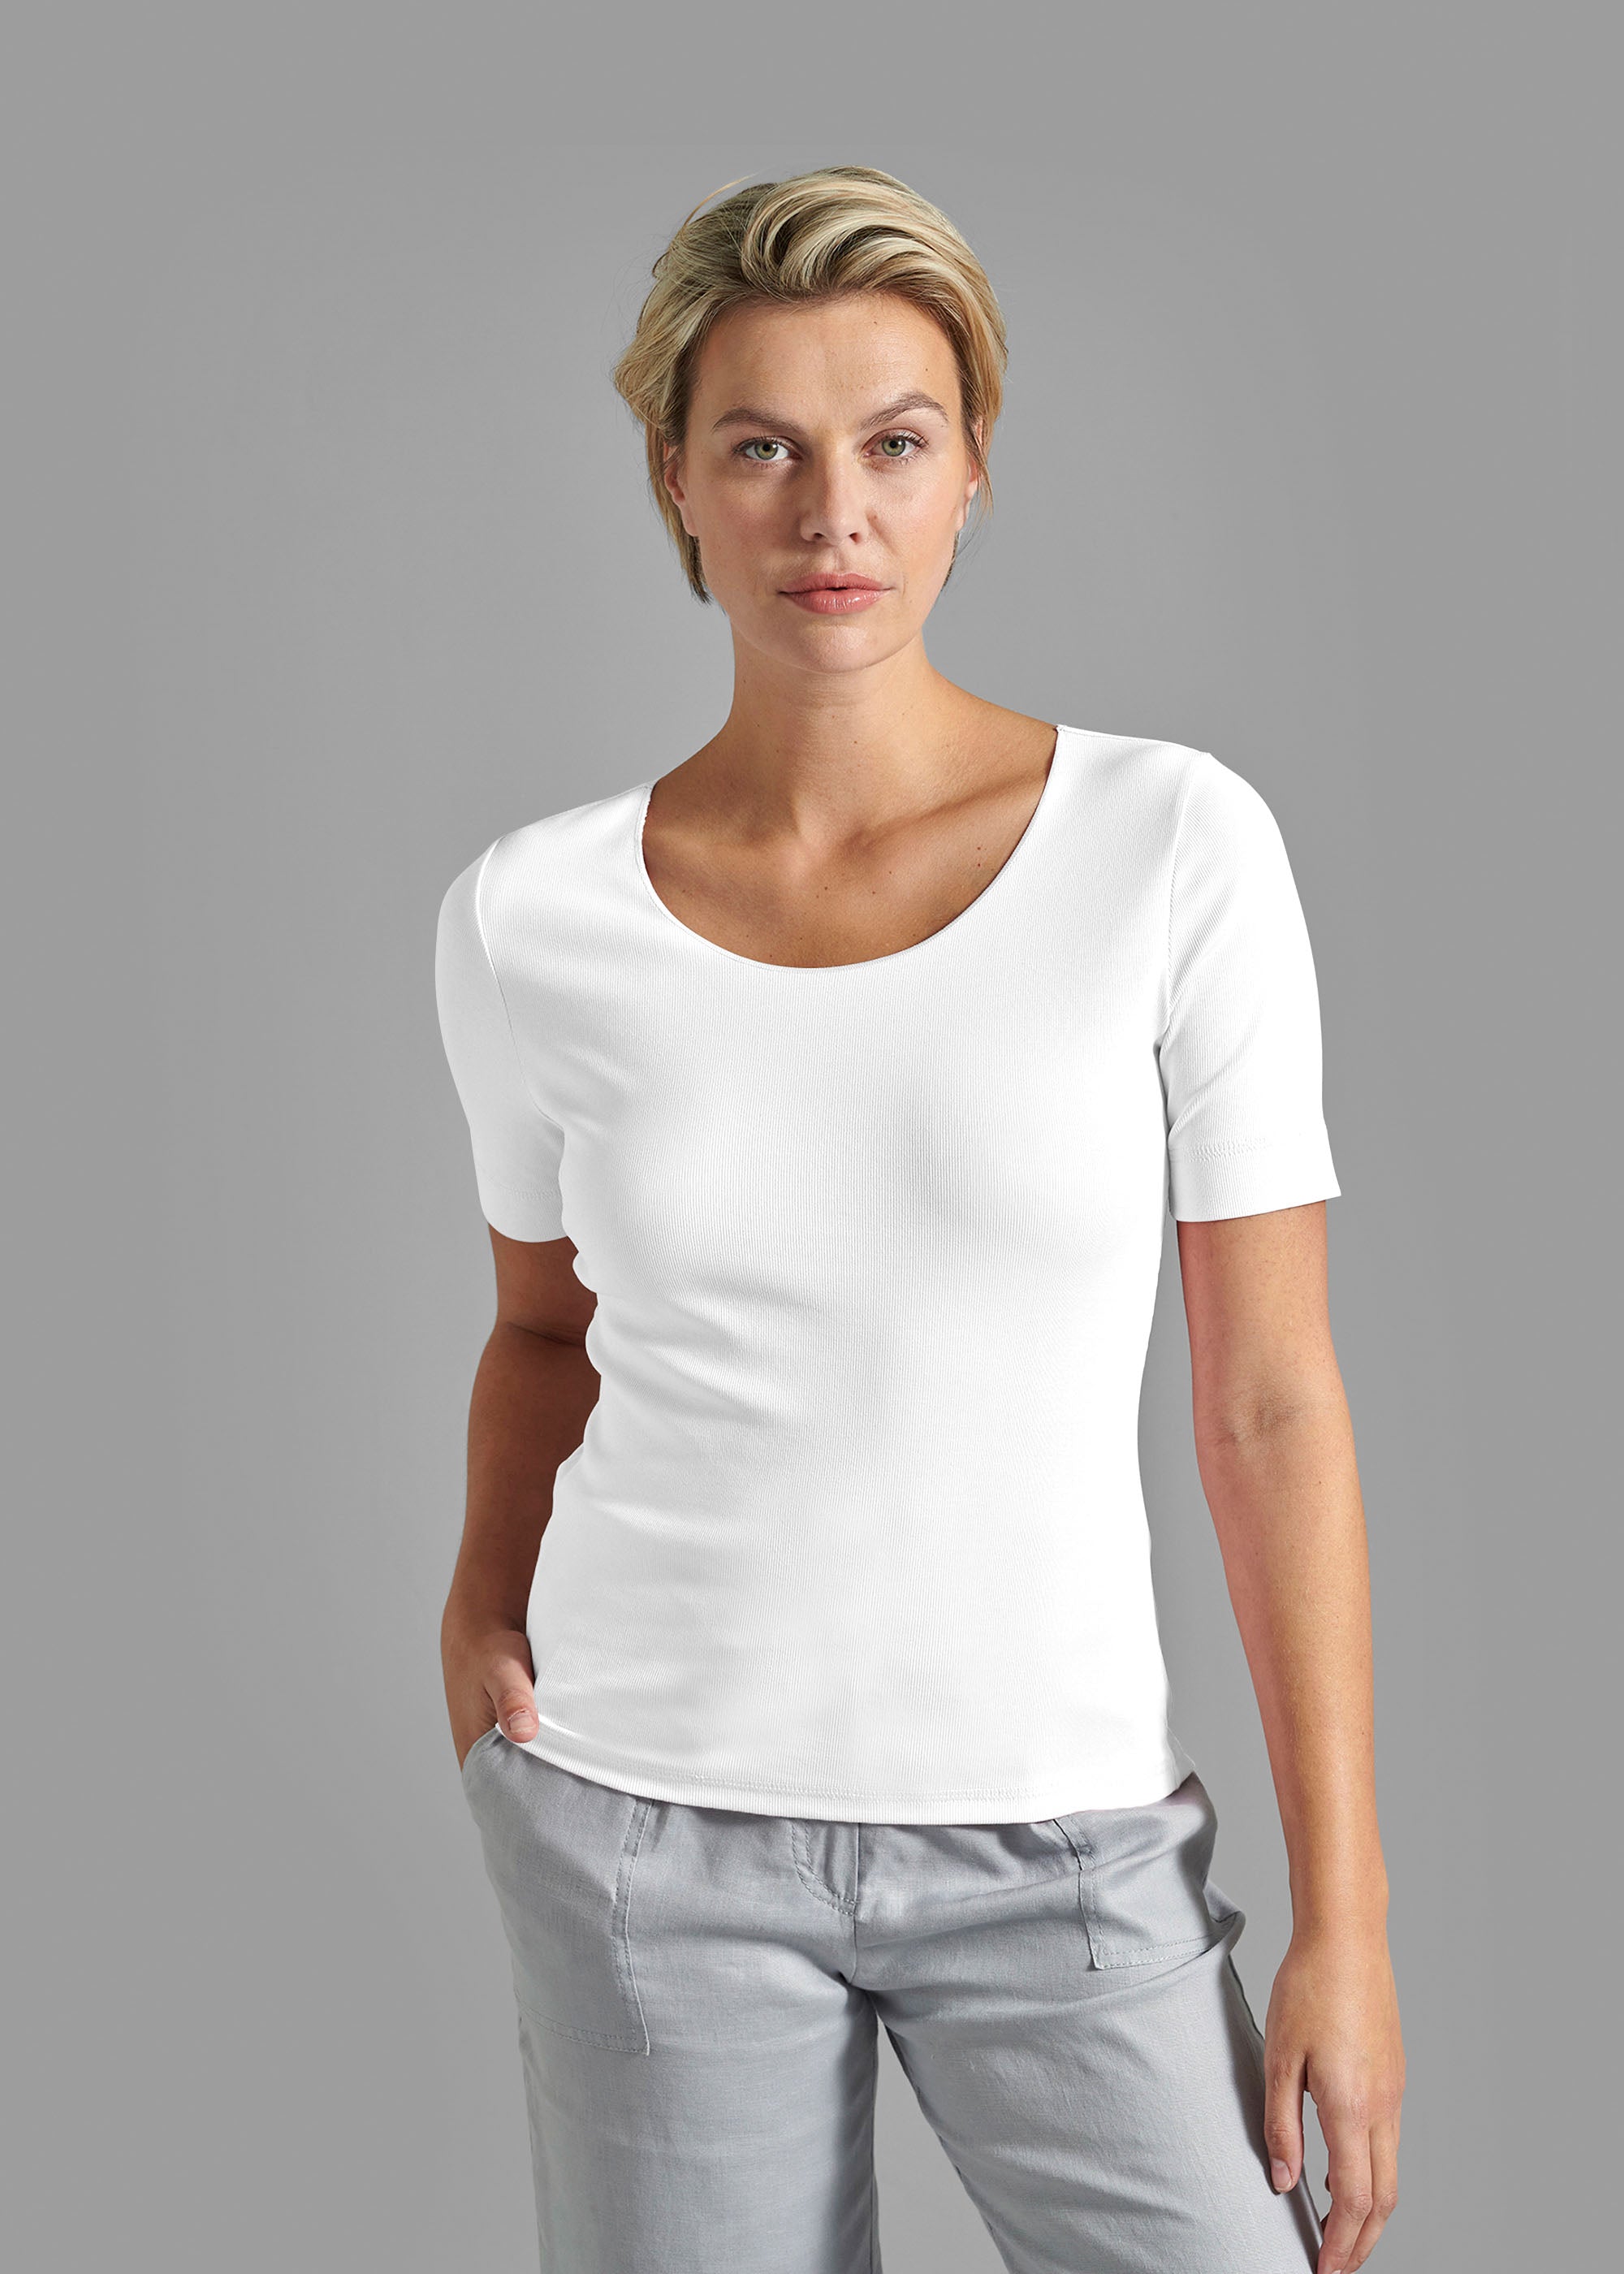 T-Shirt Modell "Eva"